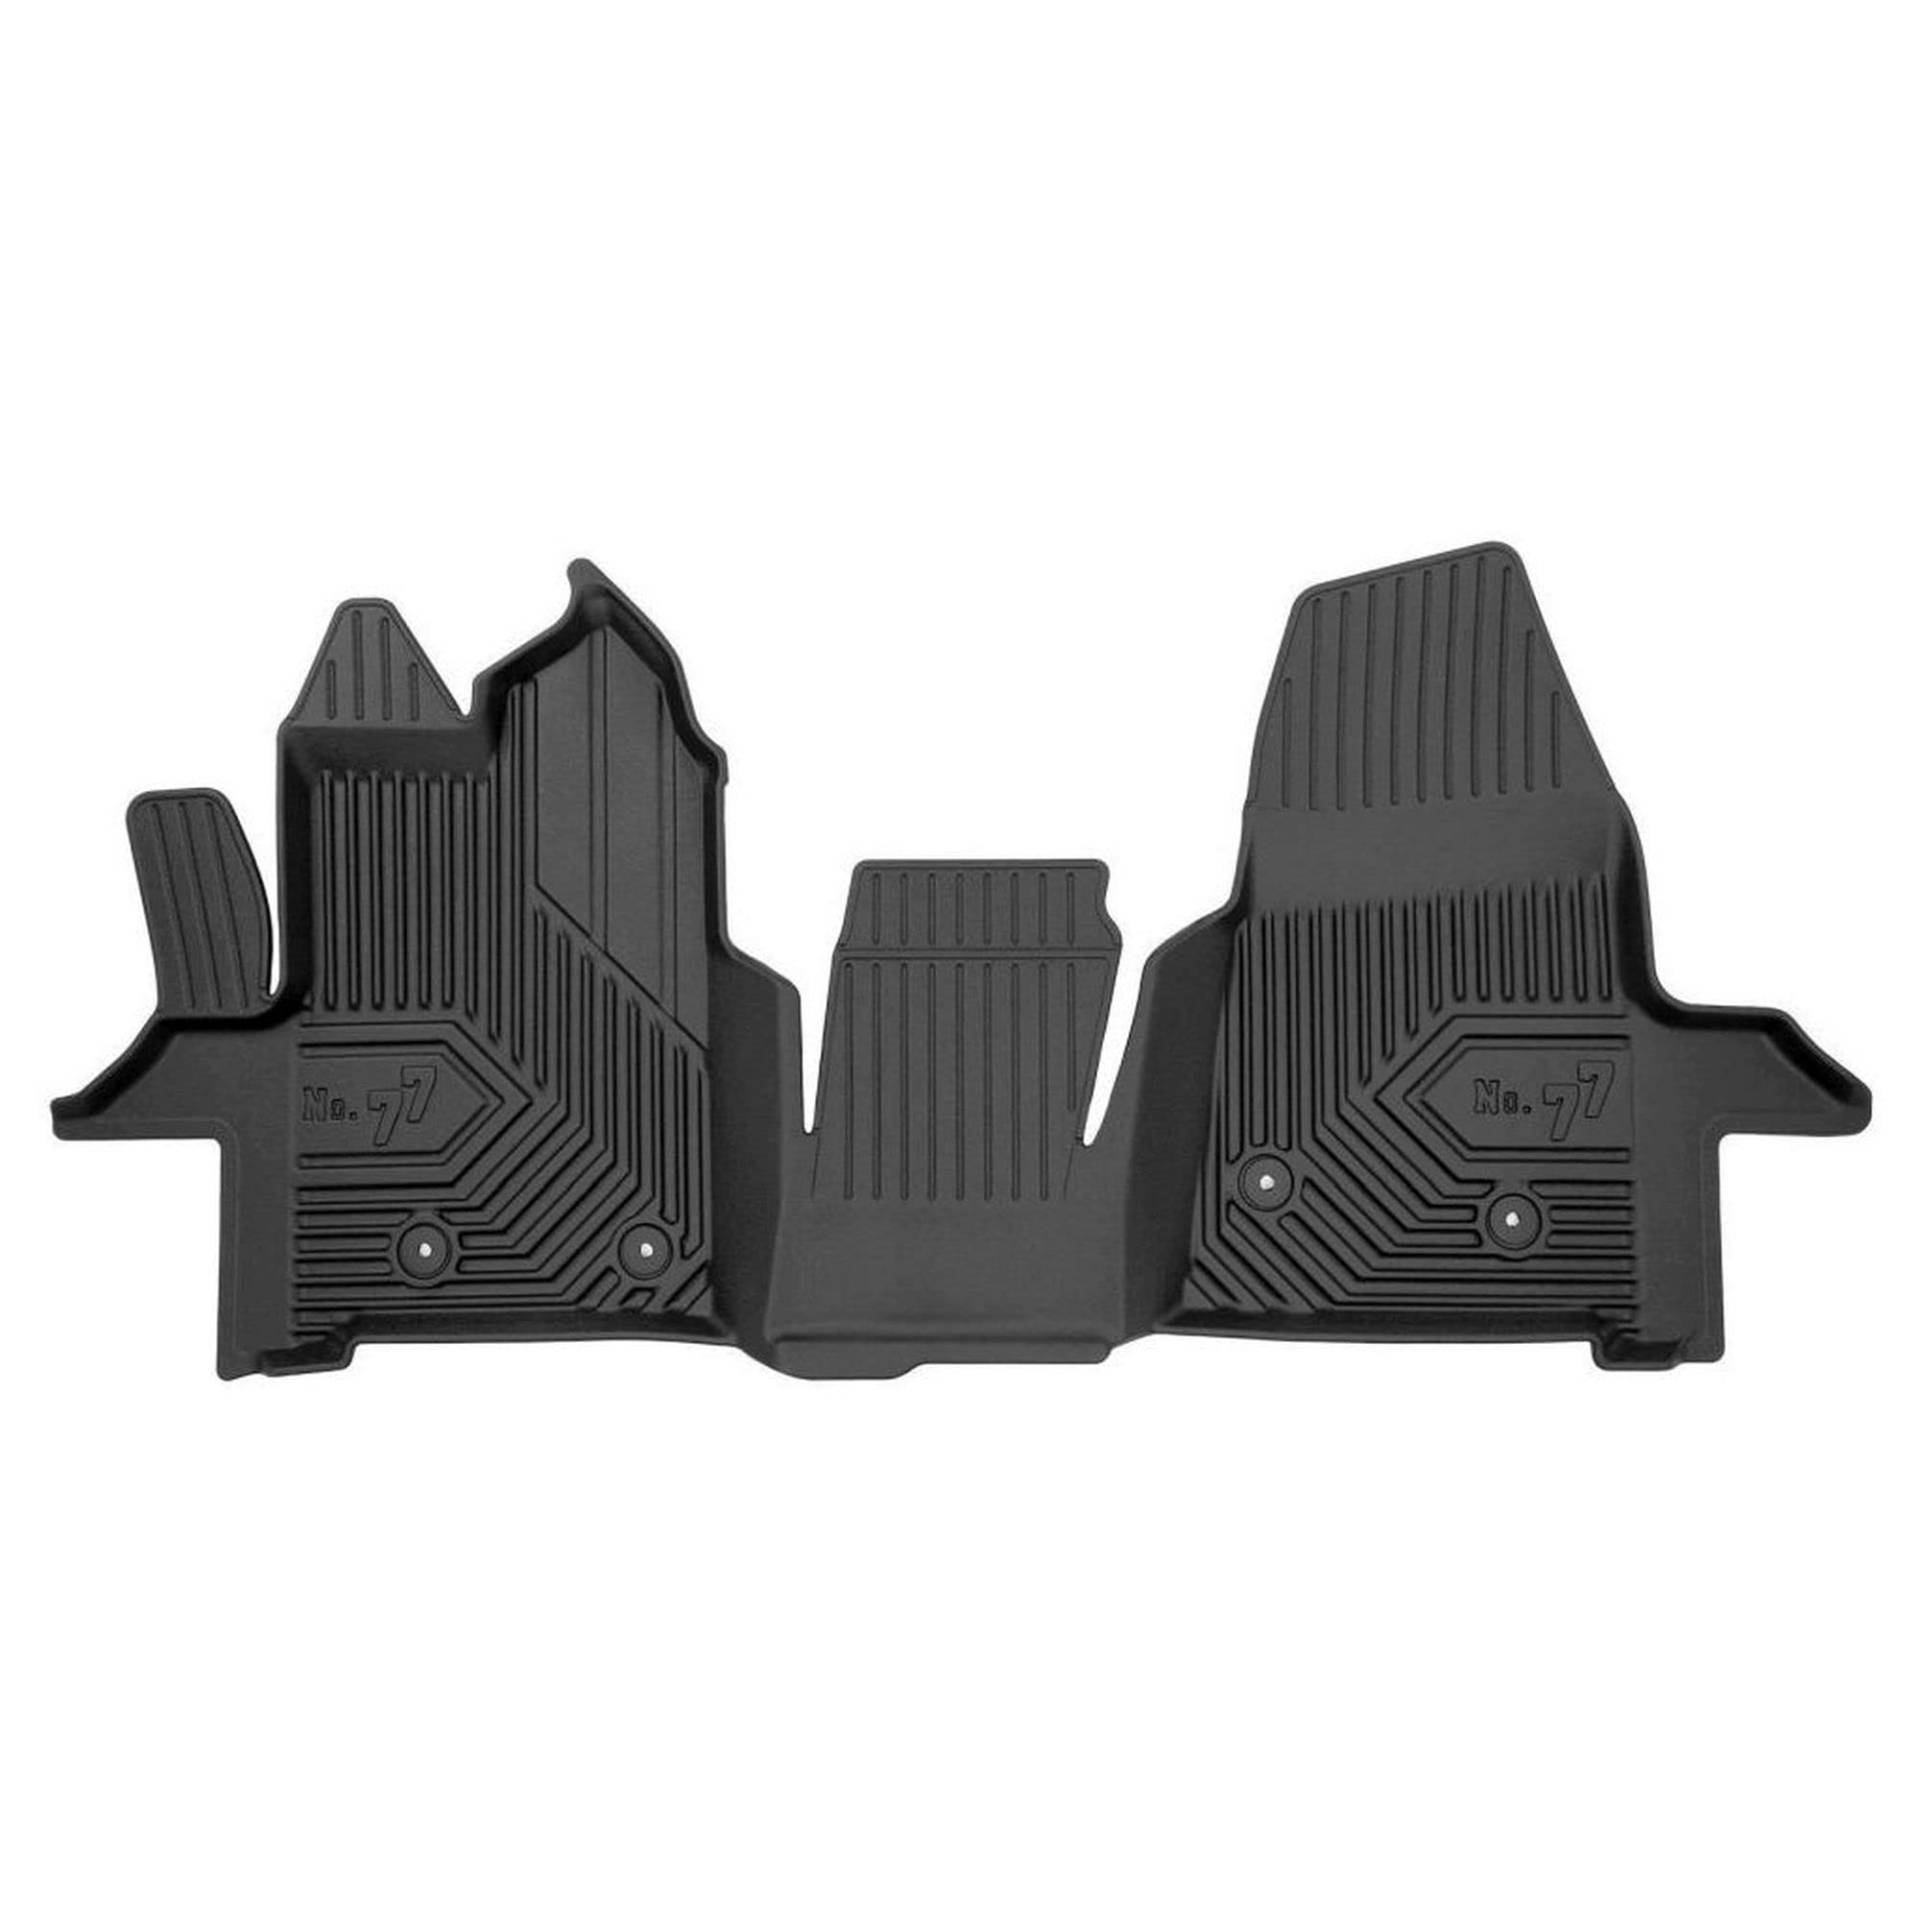 MatsMore Fussmatten Gummi Set für Ford Transit VI ab 2018 Erleben Sie neuen Reisekomfort mit rutschfesten Fußmatten No.77- Allwetter fußmatten Auto, Schutz vor Verschmutzung von MatsMore